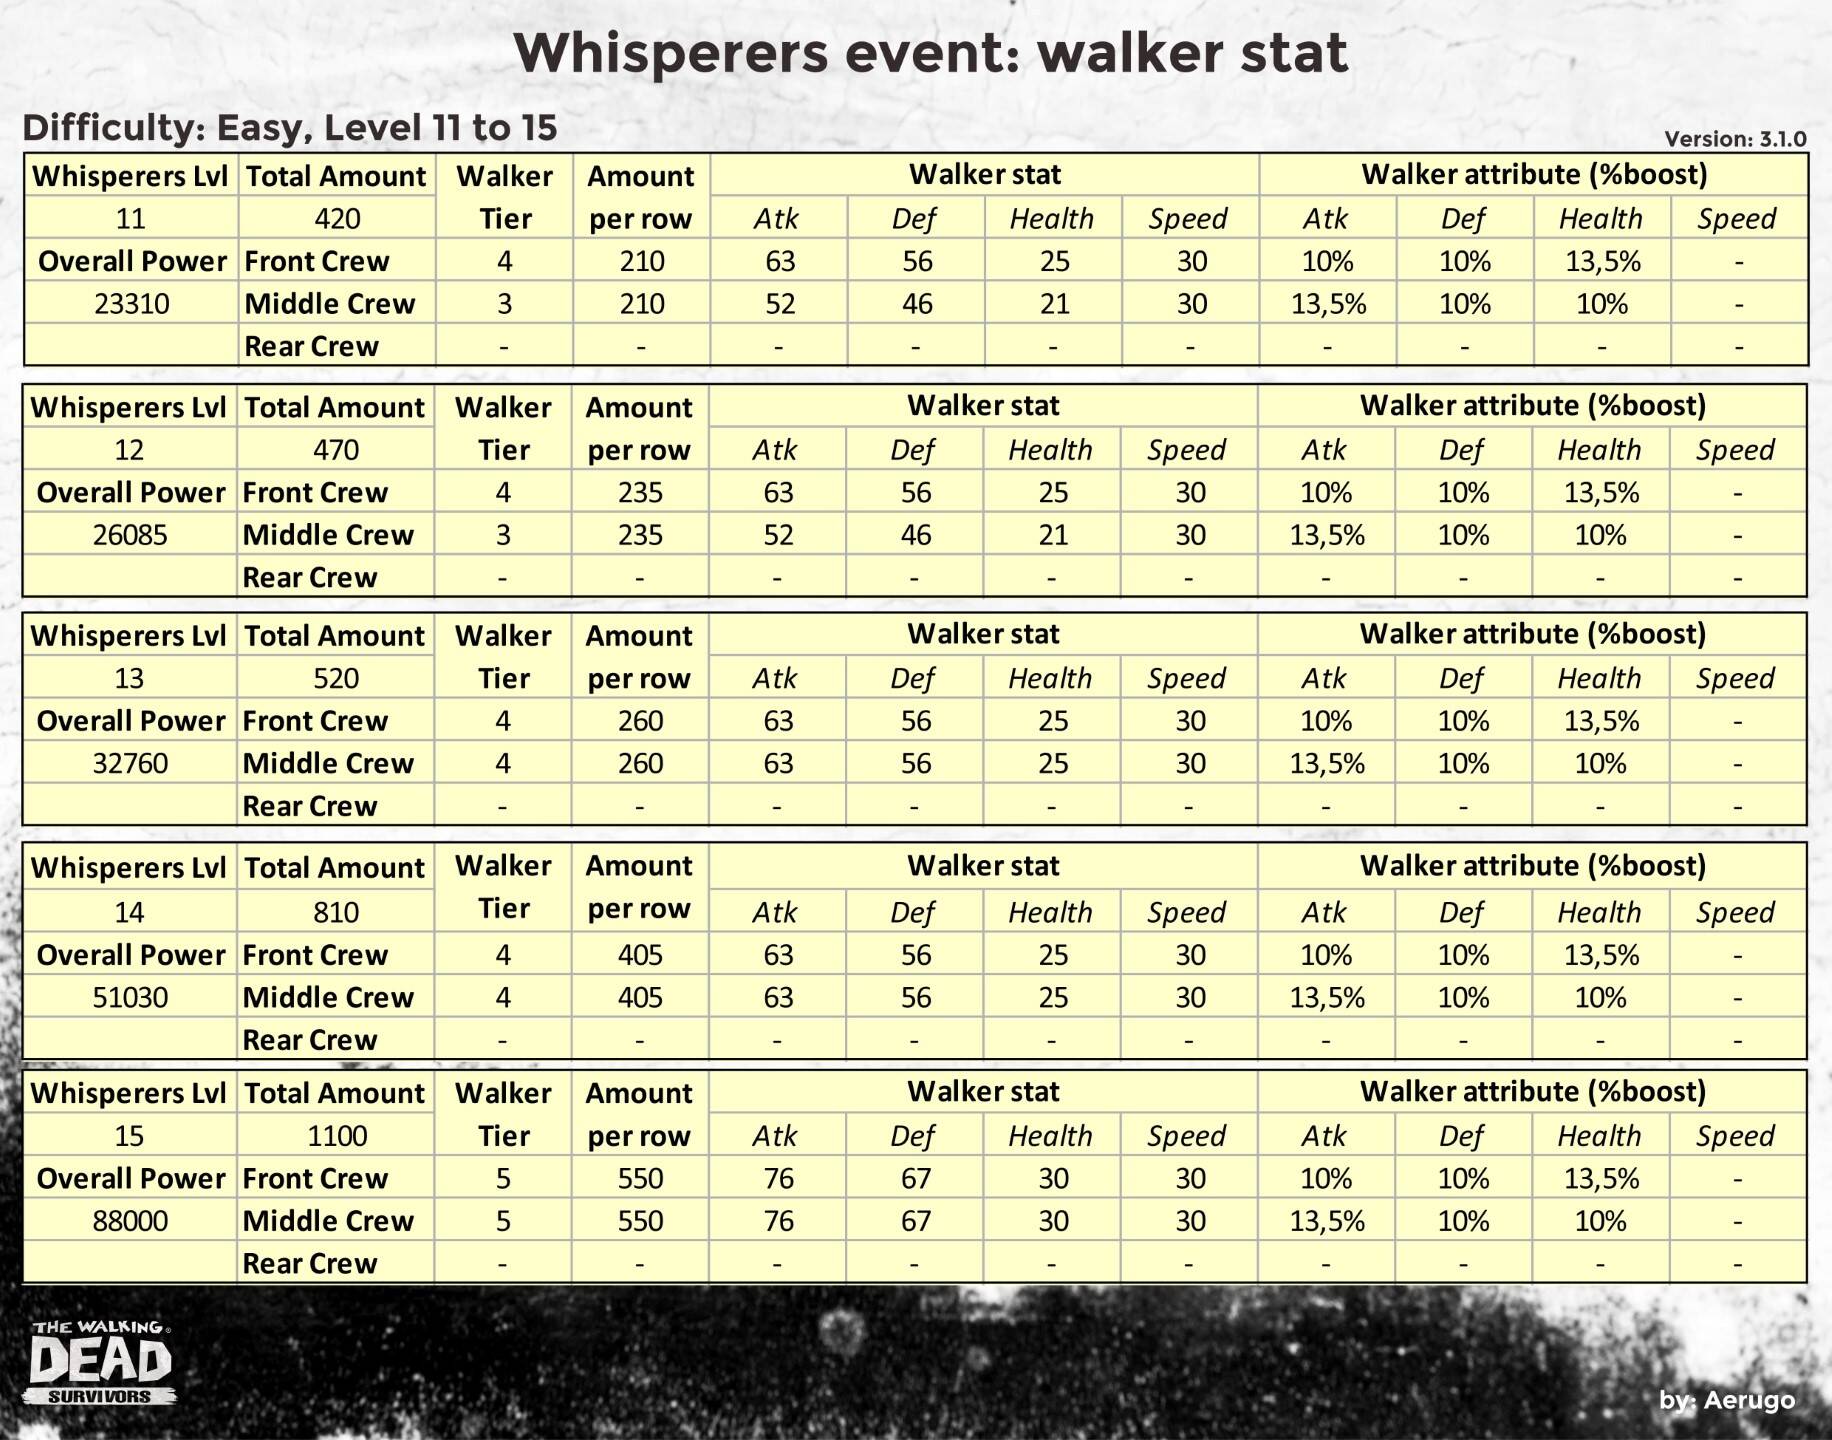 Whisperers_walkerstat_v3.1.0_part03 (1).jpg